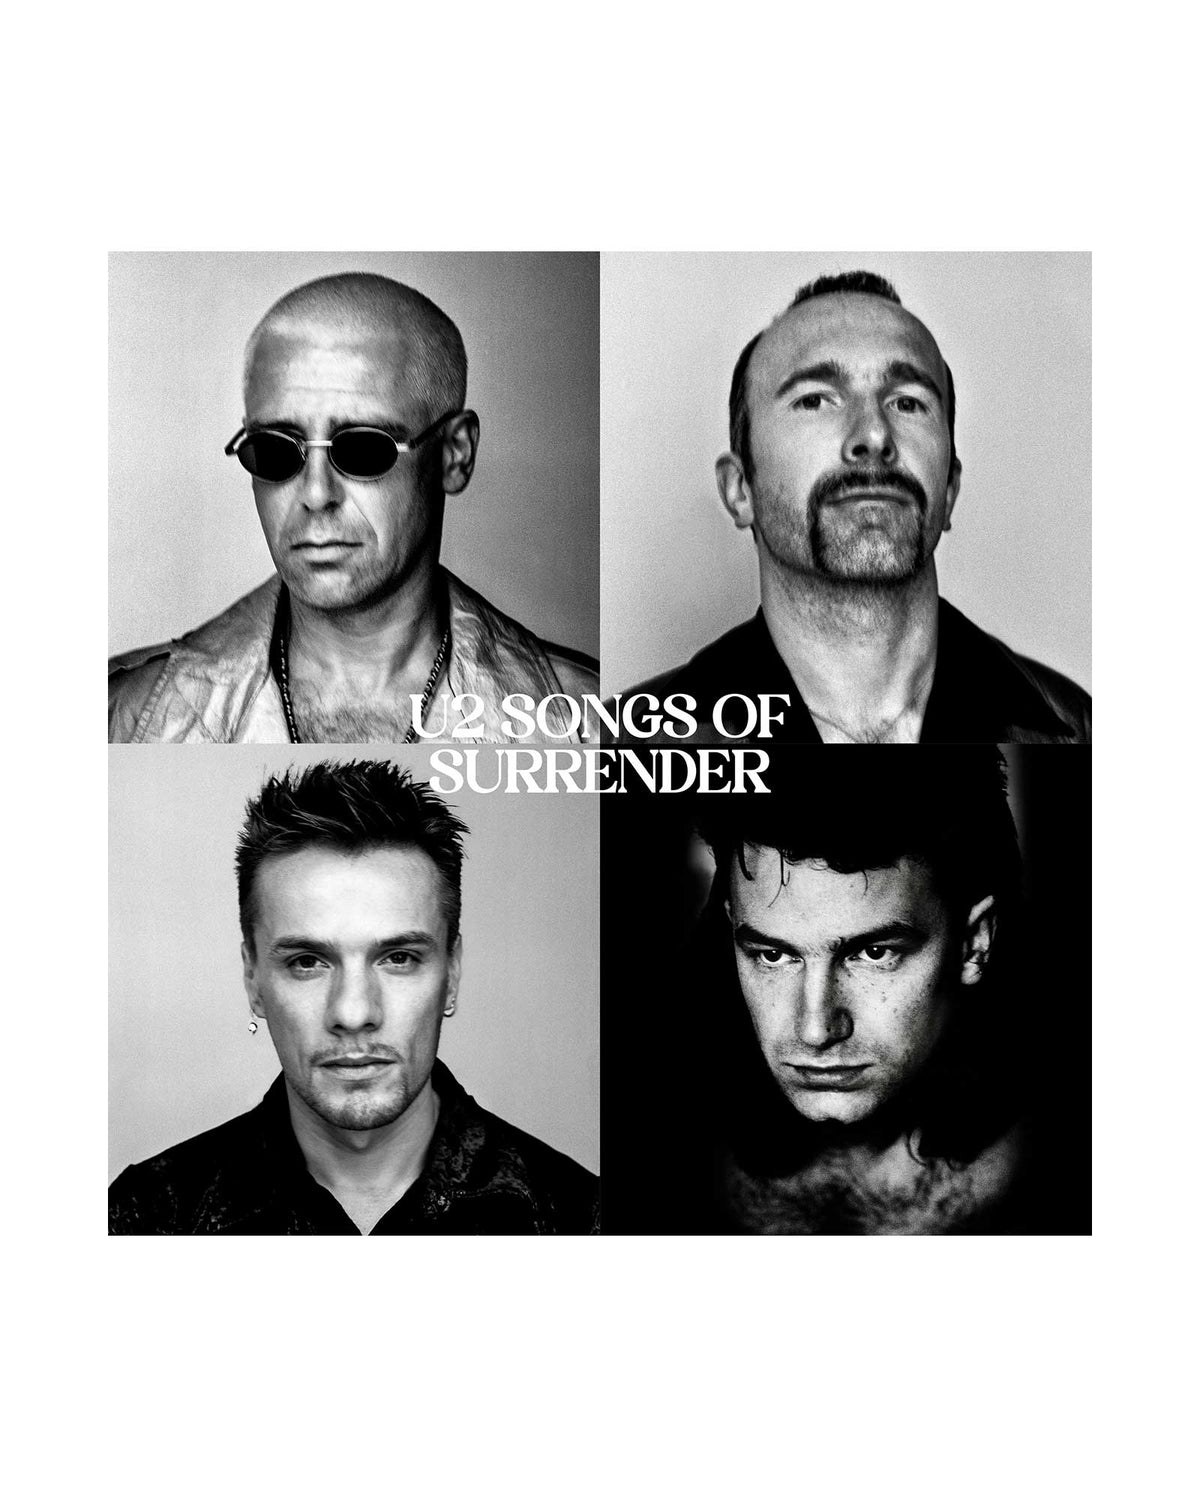 U2 - CD Deluxe "Songs of Surrender" - Rocktud - Rocktud